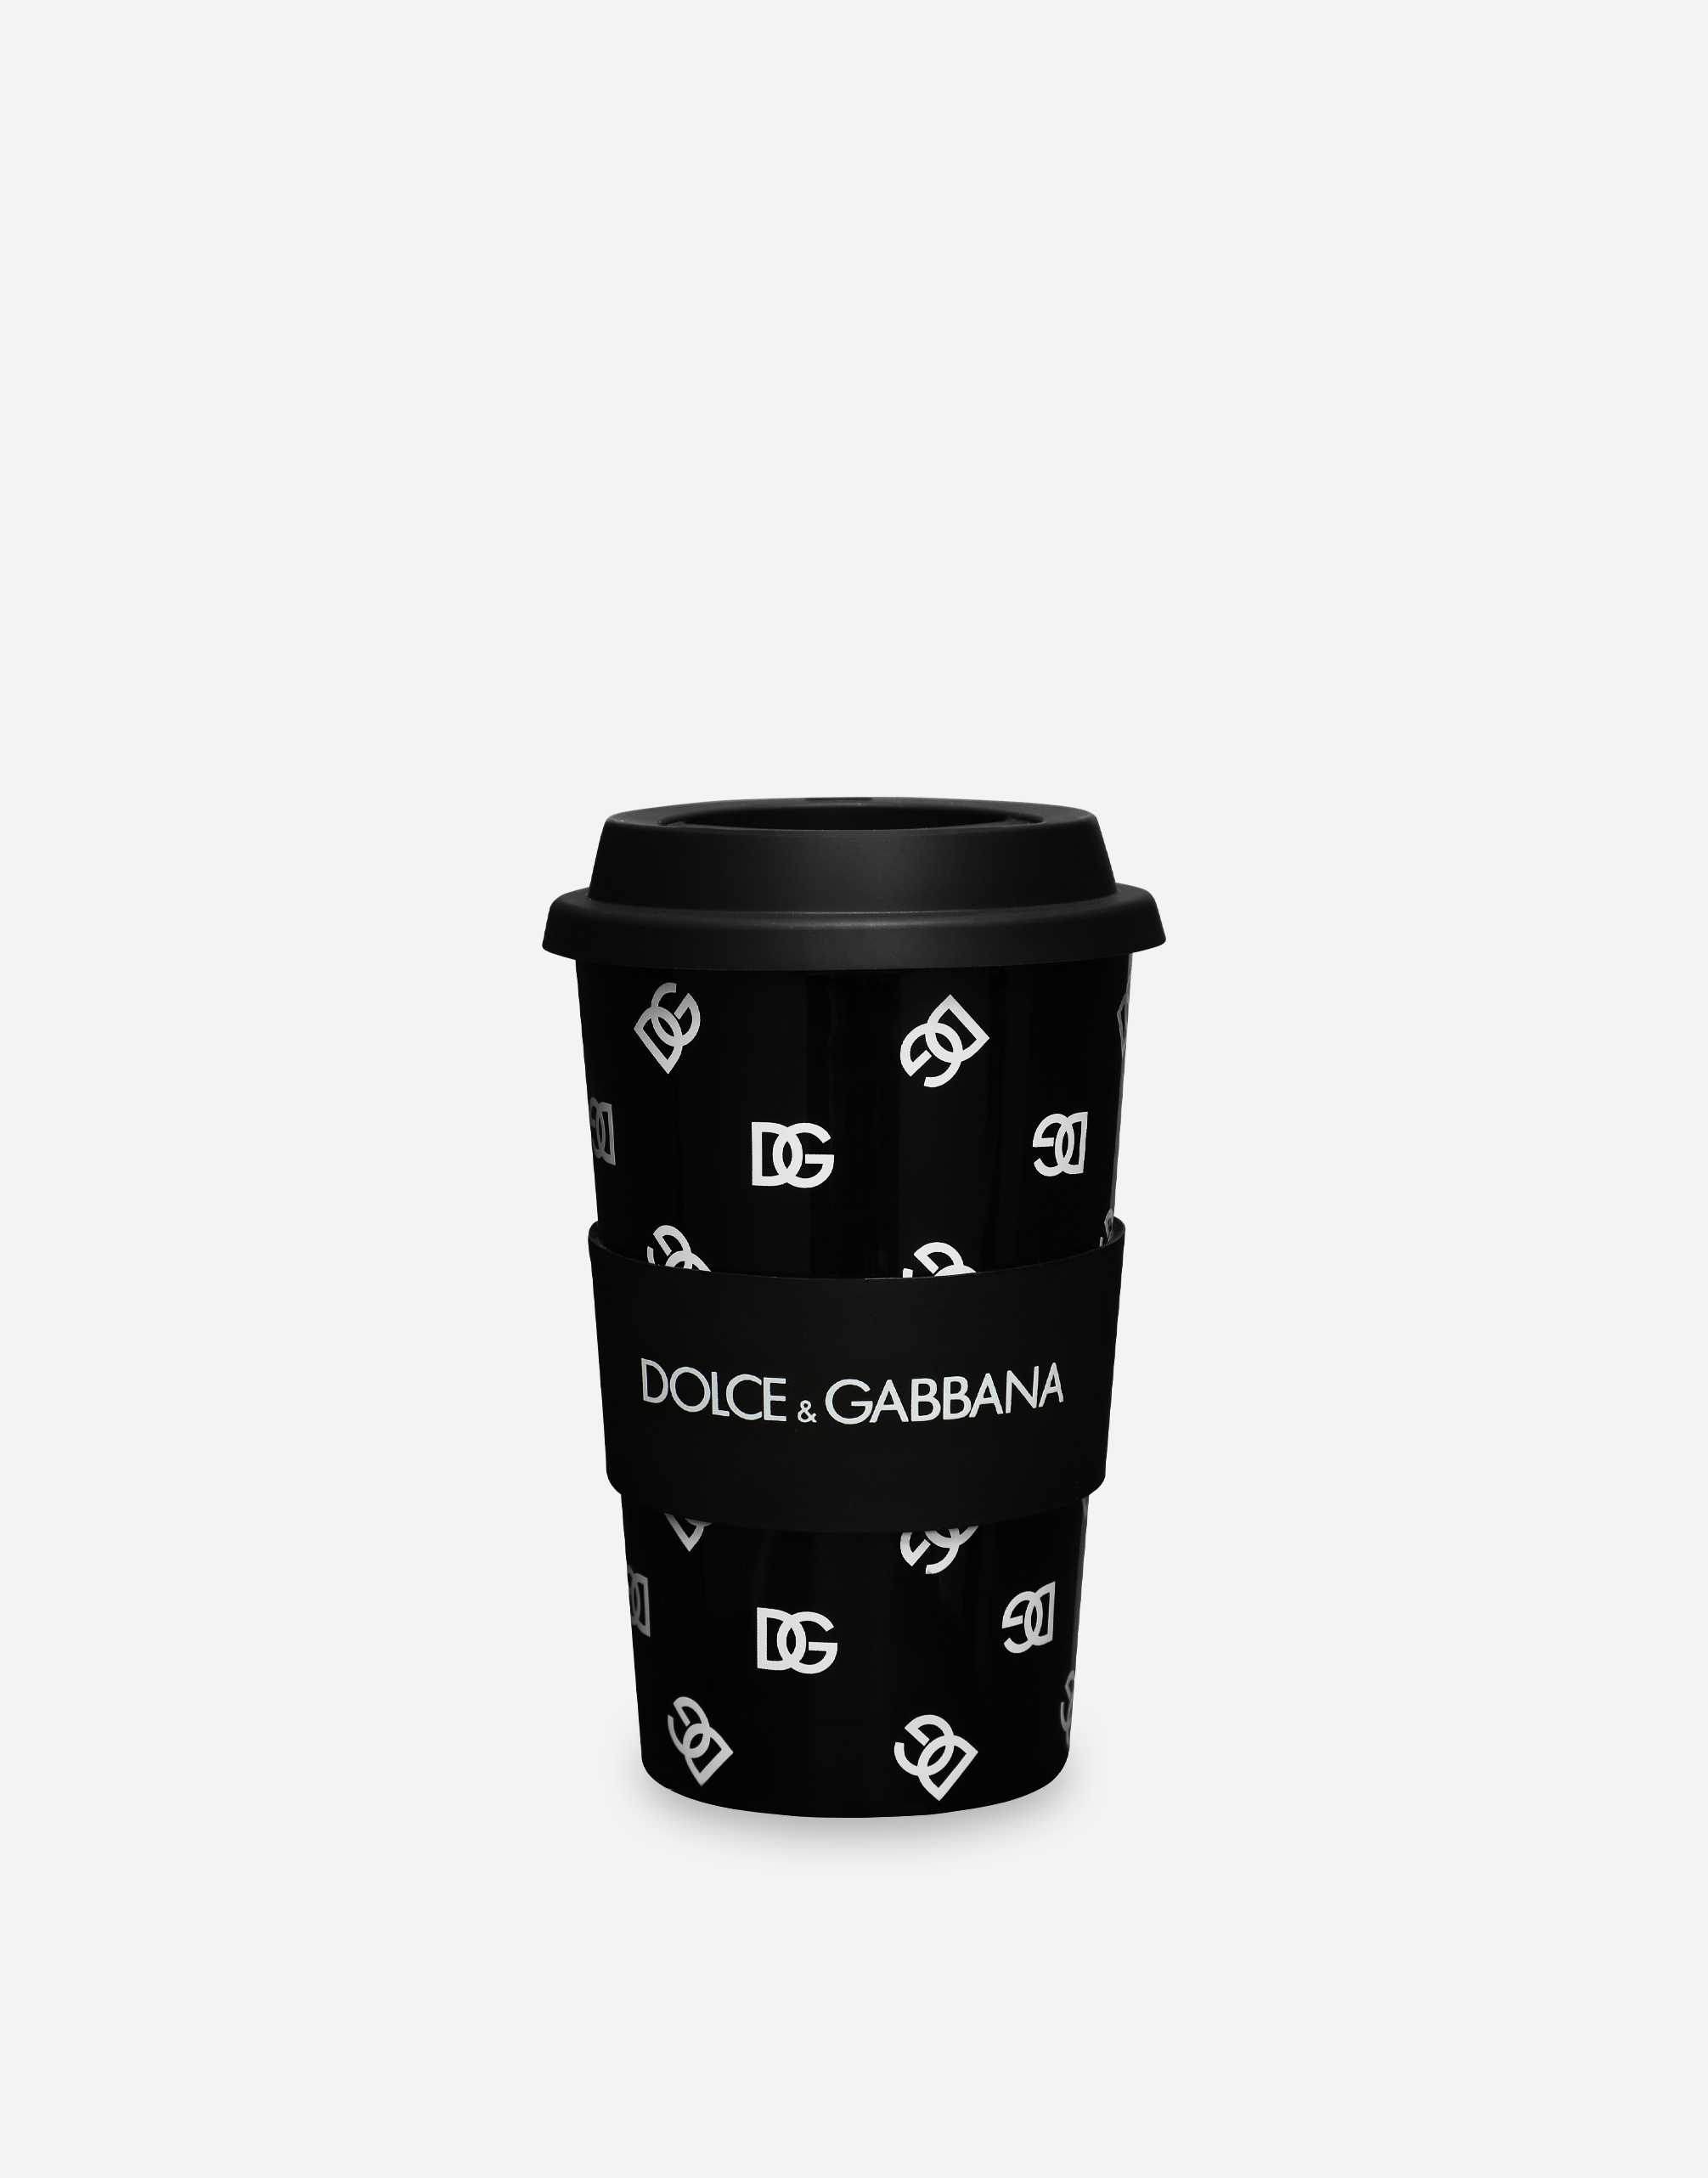 Dolce & Gabbana Ceramic Office Mug In Multicolor